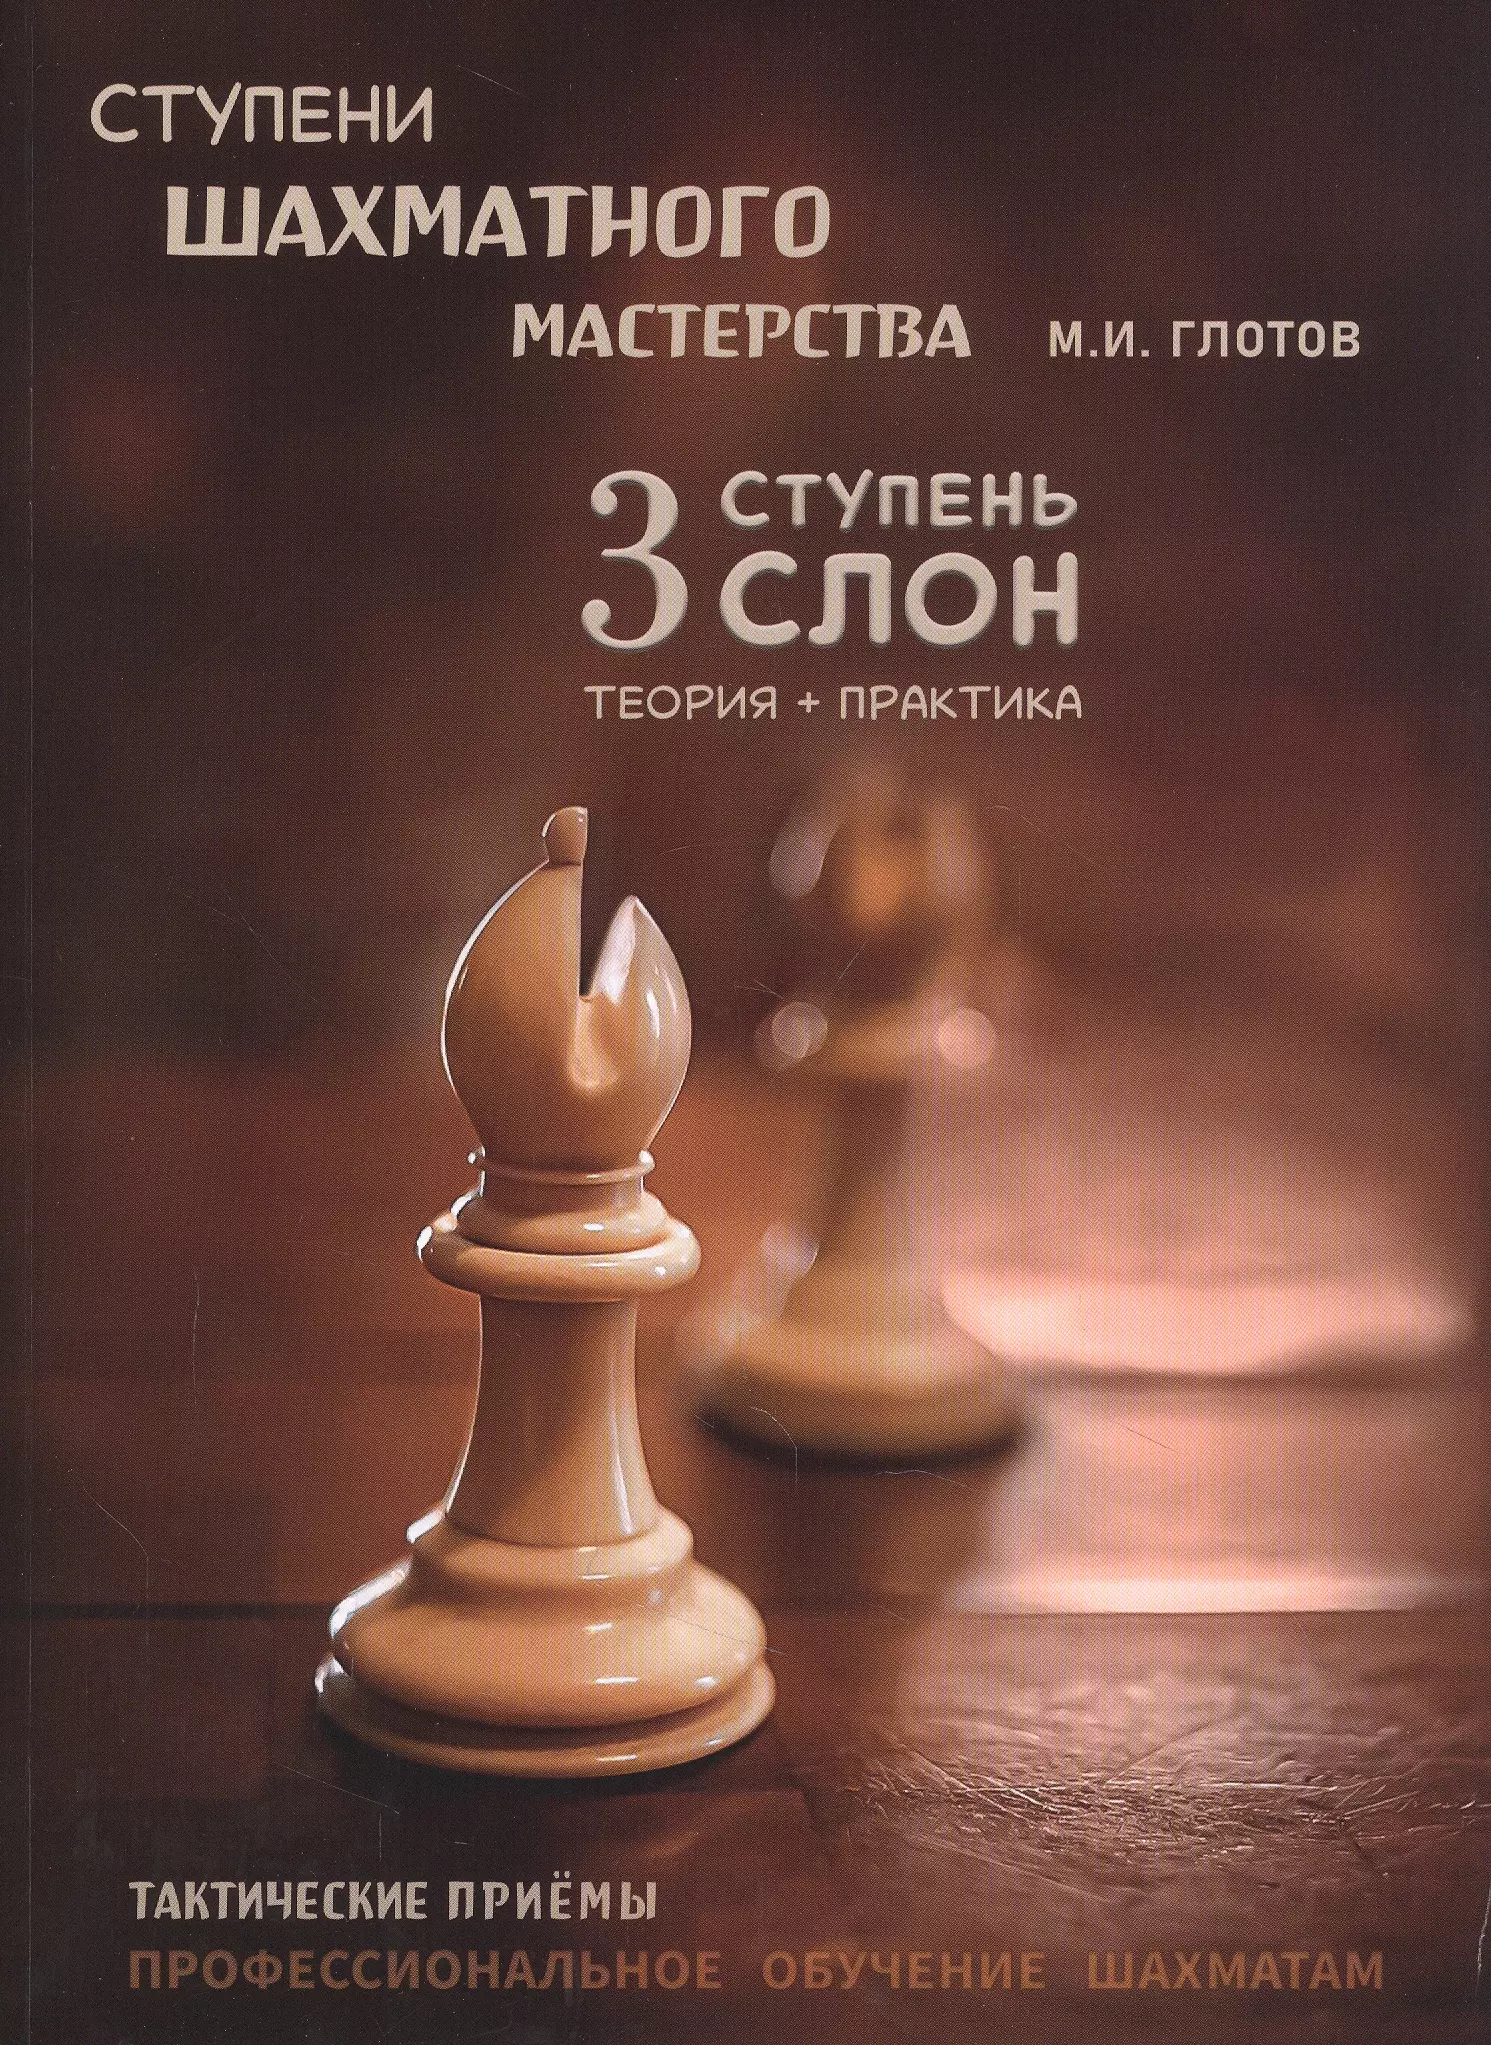 файн р психология шахматного игрока размышления психоаналитика о шахматах и шахматистах Ступени шахматного мастерства. 3 ступень Слон